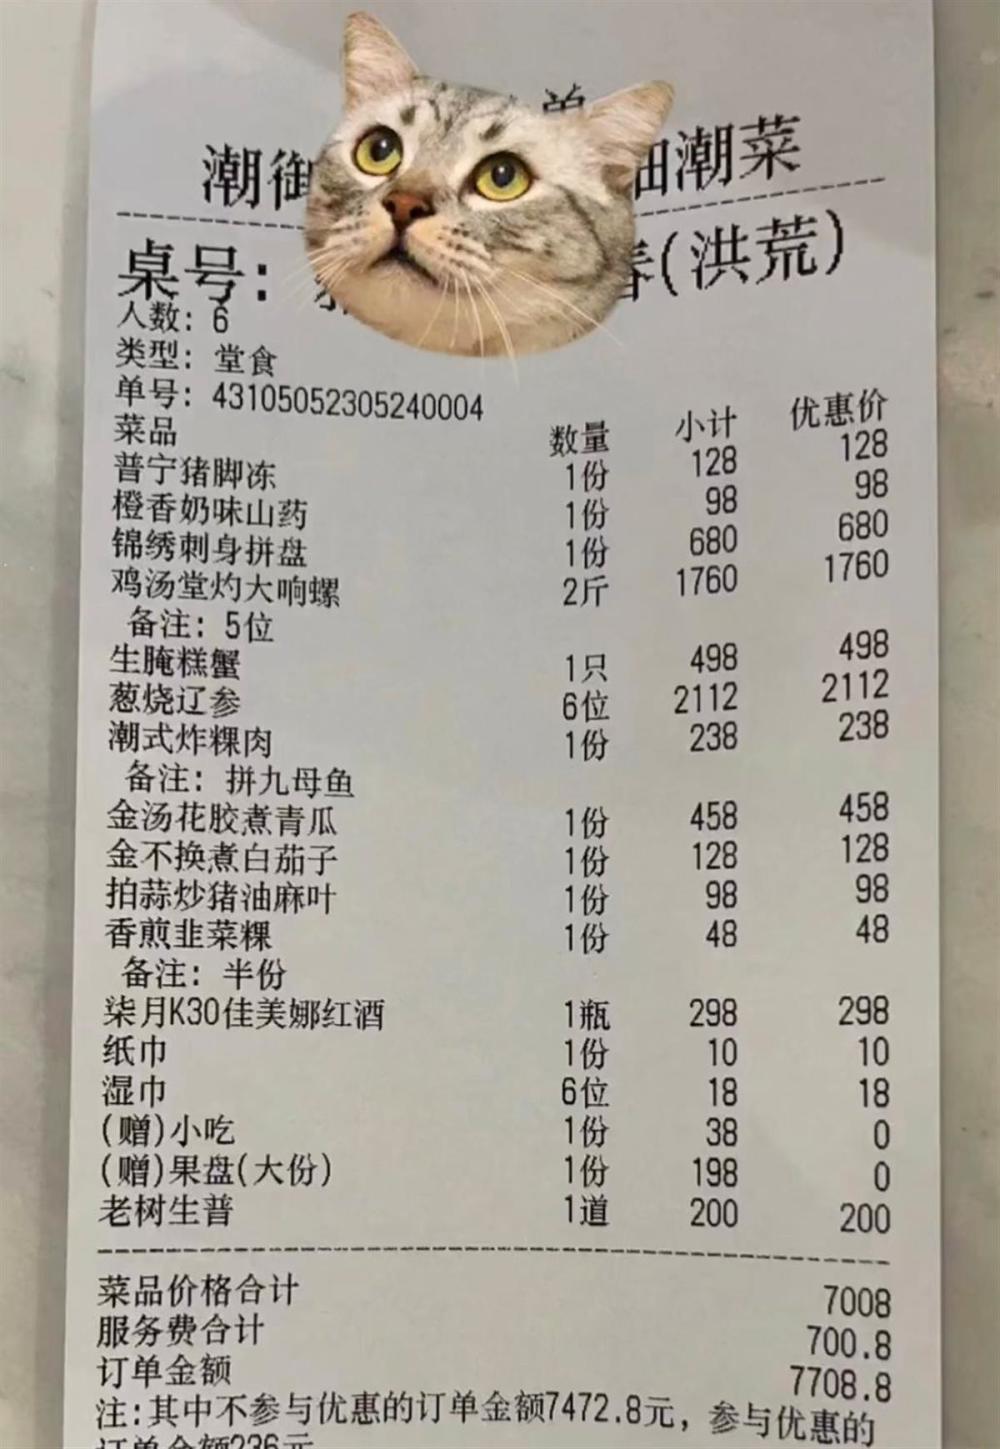 女子用餐被收700元服务费,餐厅称收费单明码标价,市监部门回应